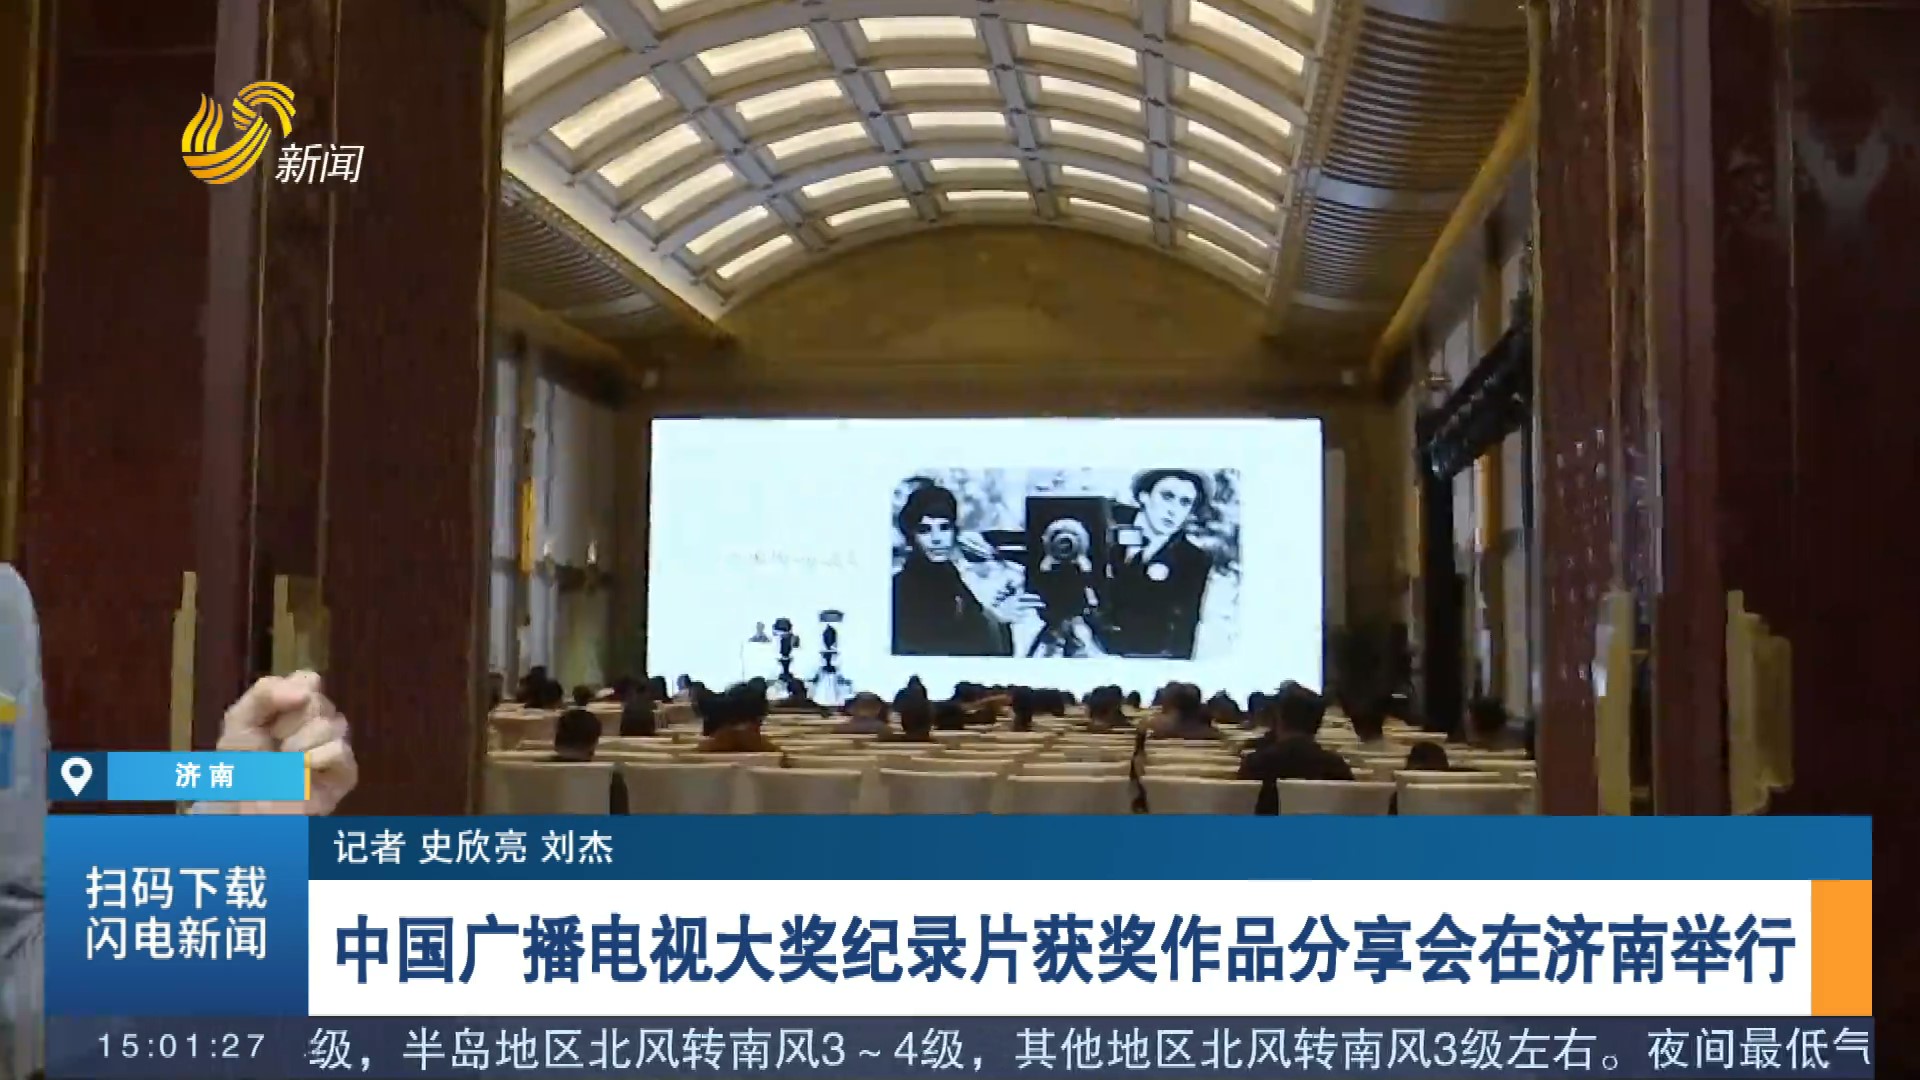 【闪电连线】中国广播电视大奖纪录片获奖作品分享会在济南举行